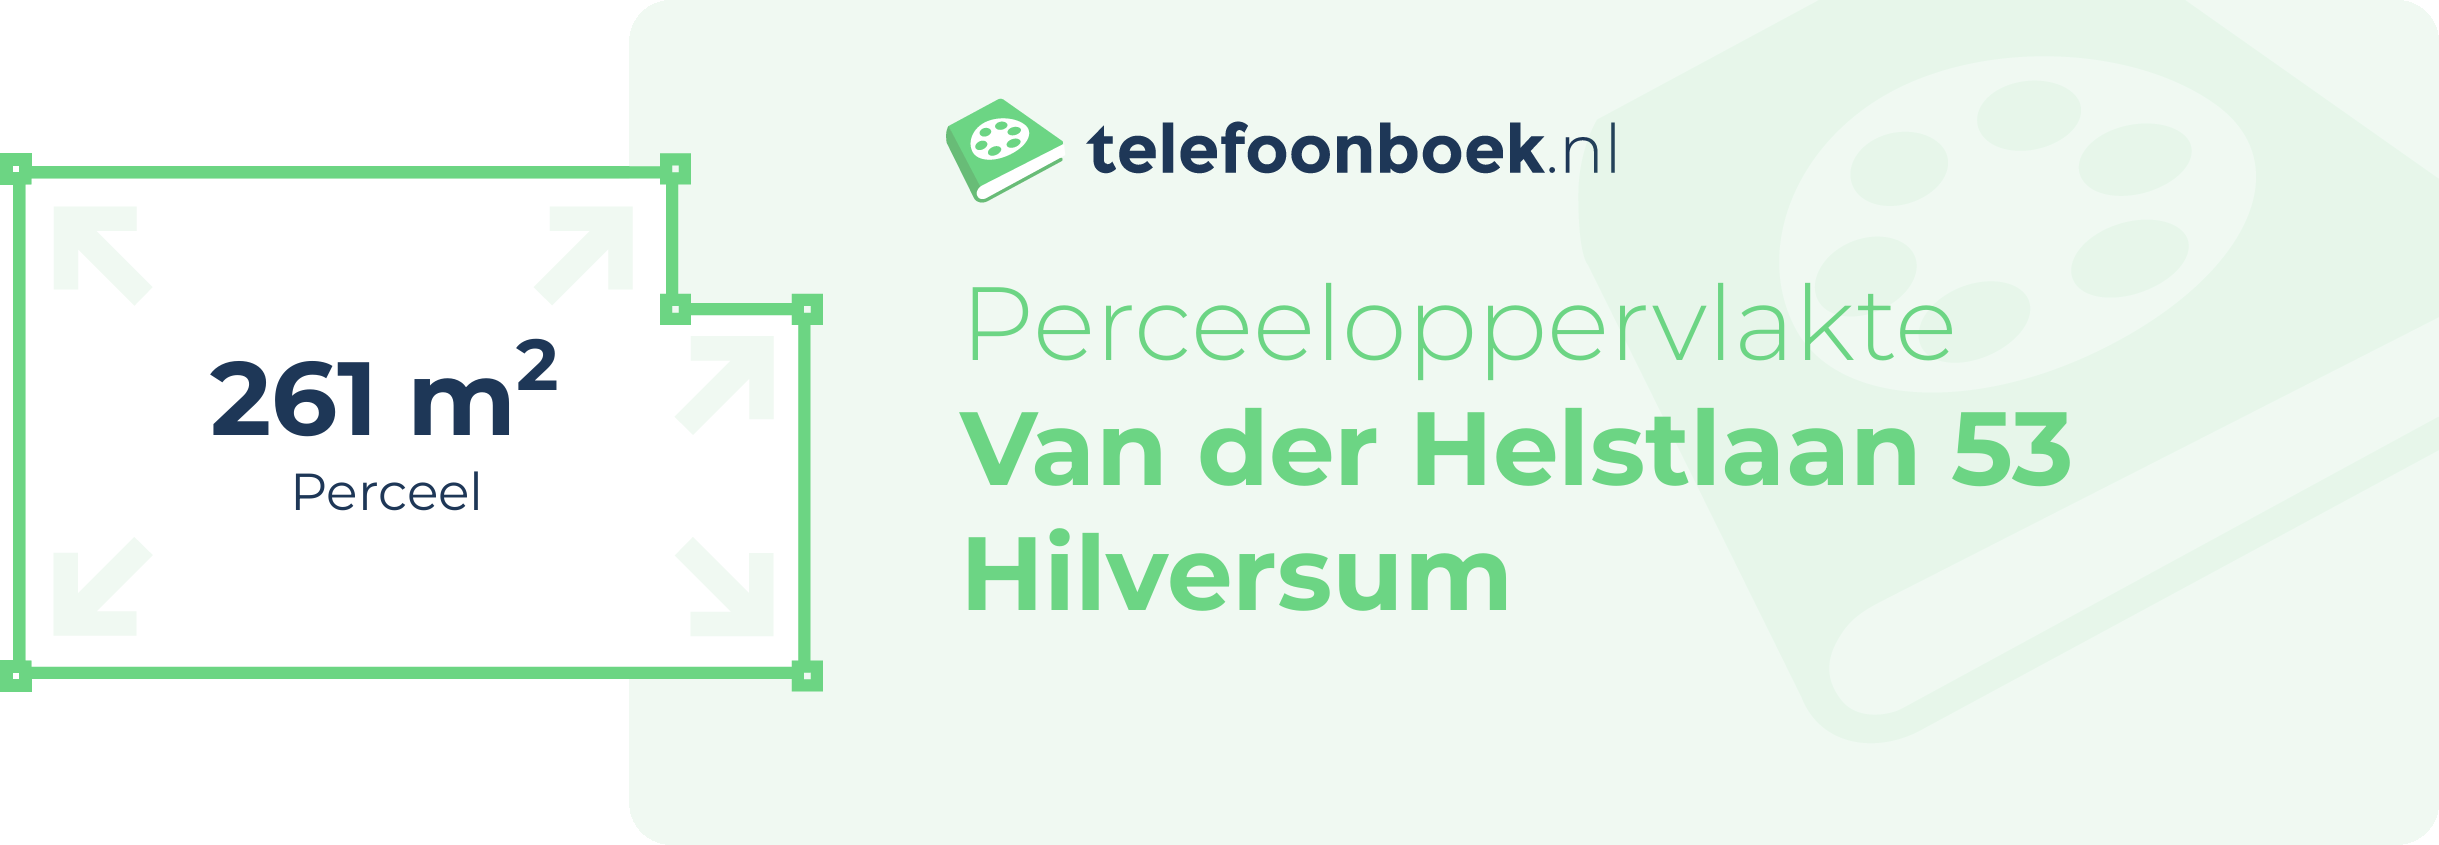 Perceeloppervlakte Van Der Helstlaan 53 Hilversum